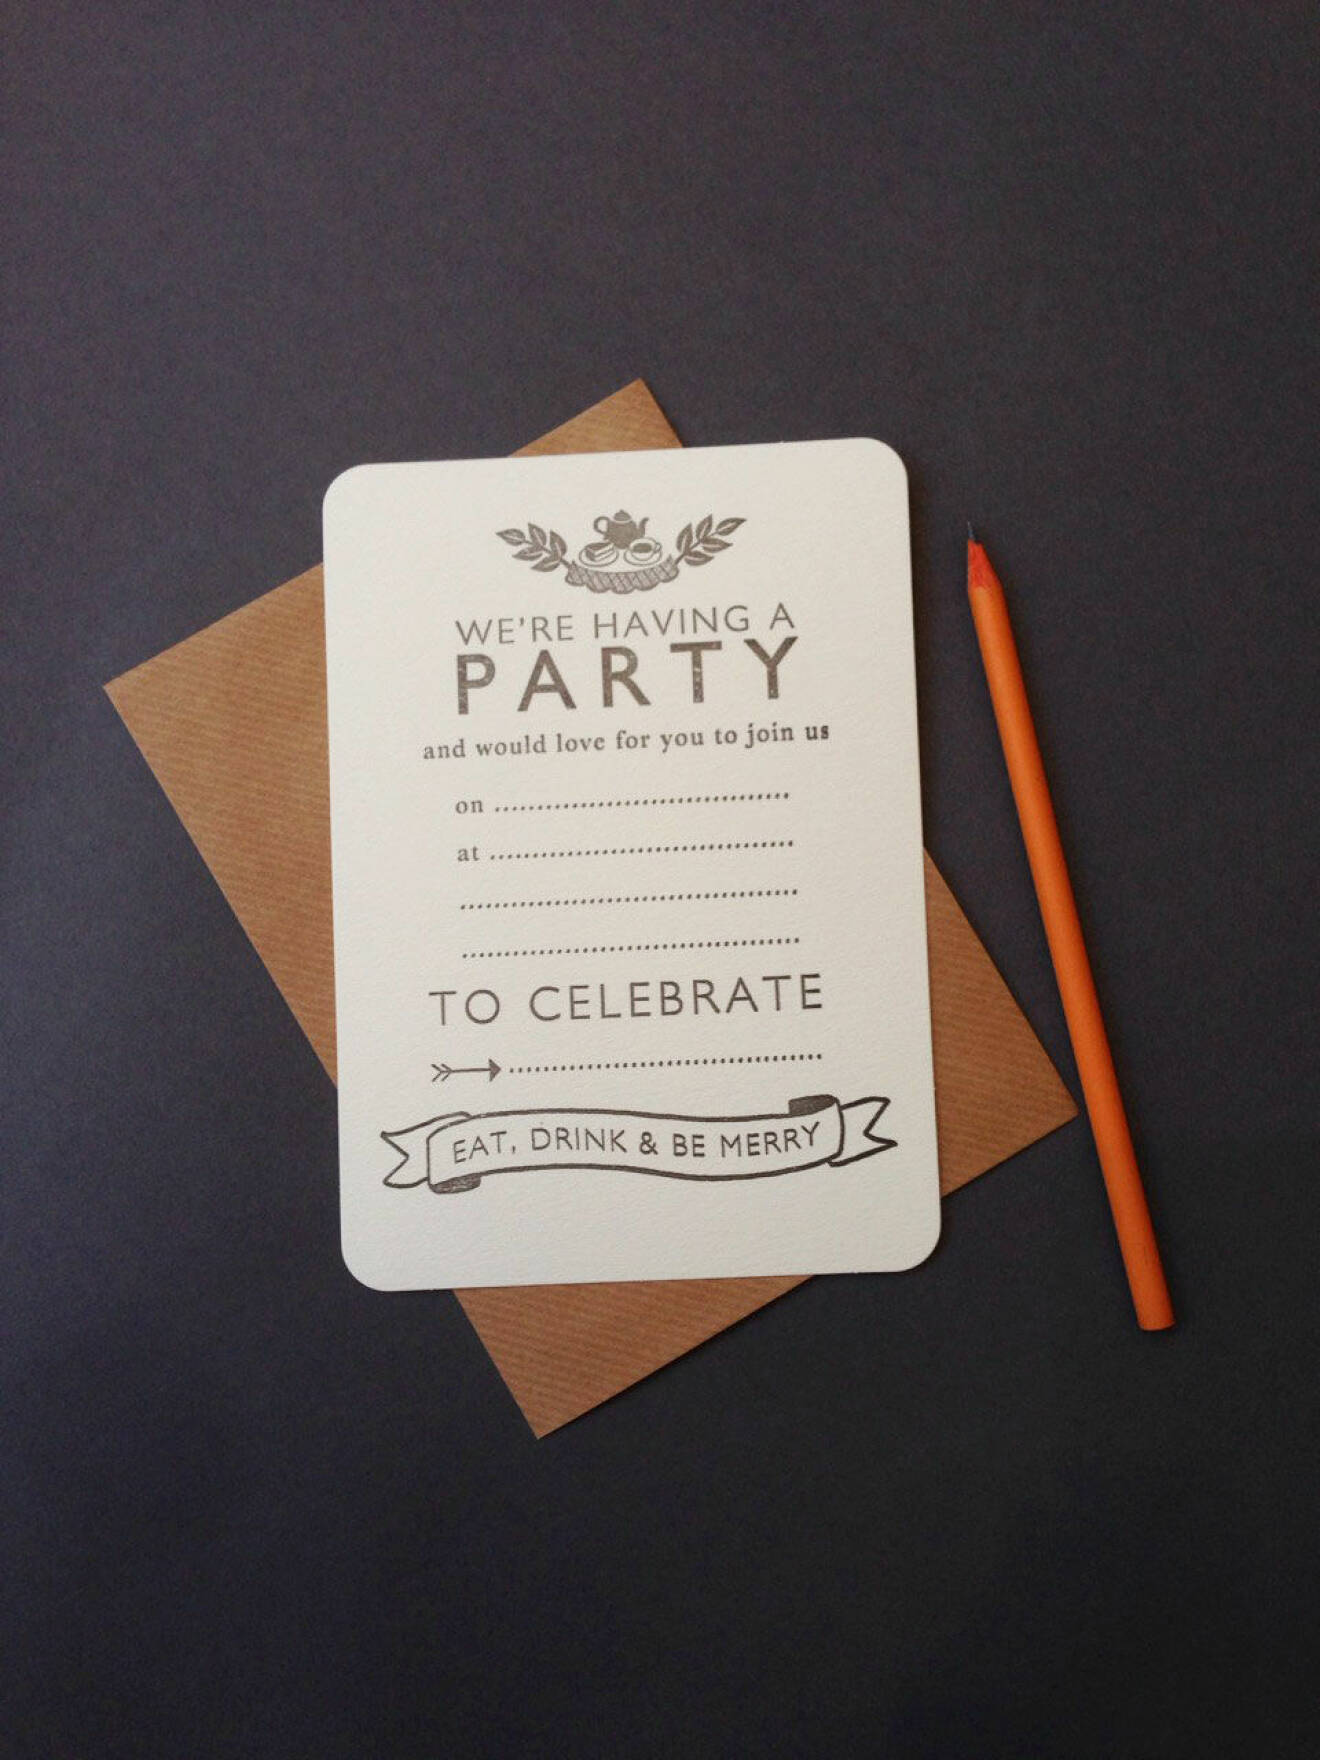 Festinbjudan – bjud in till party med en riktigt snygg inbjudan.